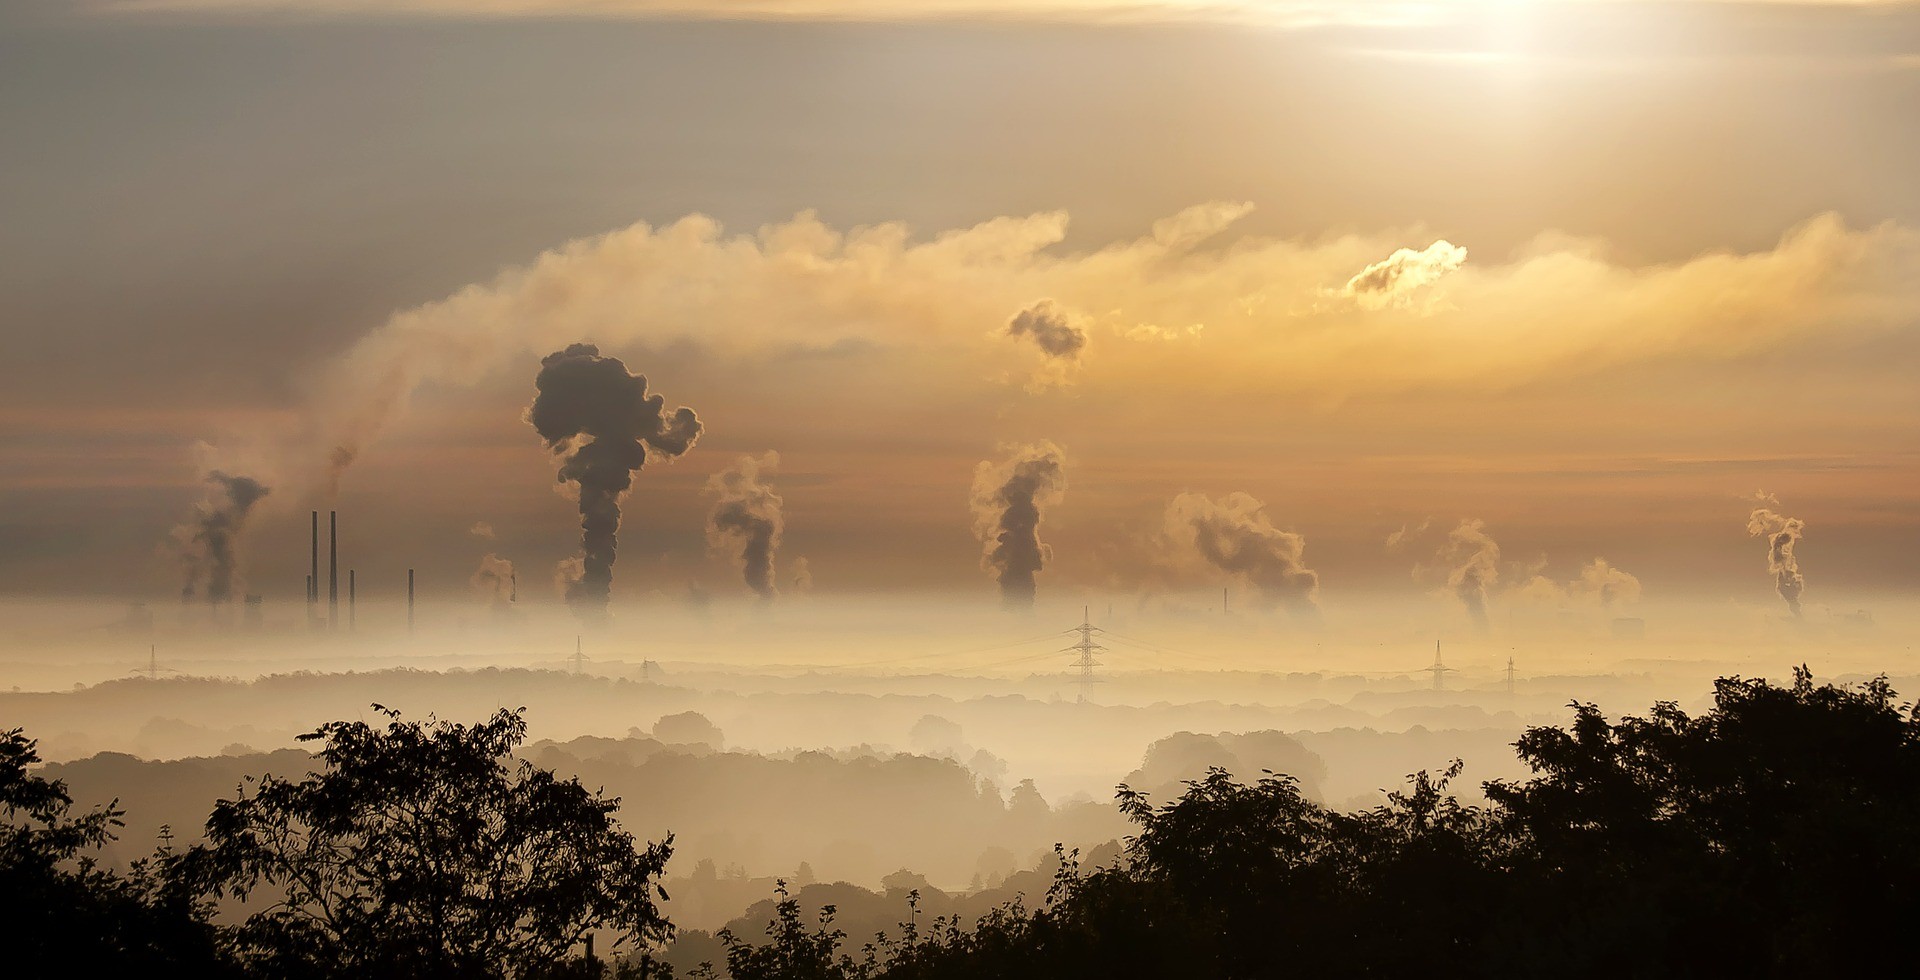 Poluição atmosférica pode causar sérios impactos na saúde humana (Foto: Pixabay)